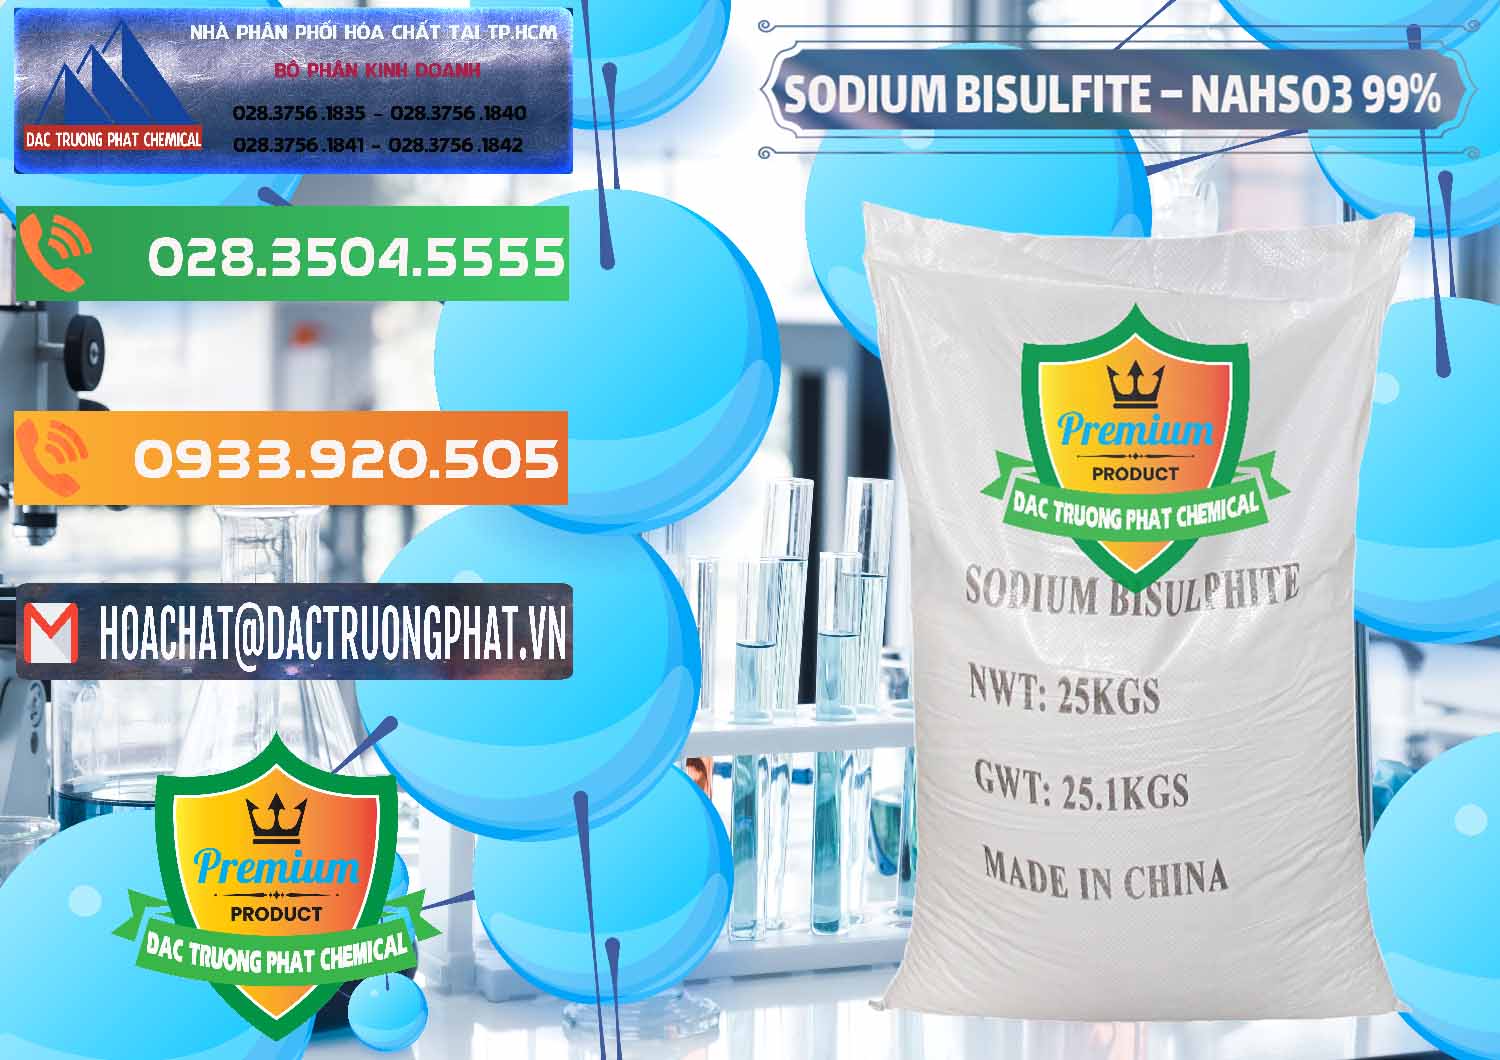 Nơi cung cấp & bán Sodium Bisulfite – NAHSO3 Trung Quốc China - 0140 - Công ty bán - cung cấp hóa chất tại TP.HCM - hoachatxulynuoc.com.vn